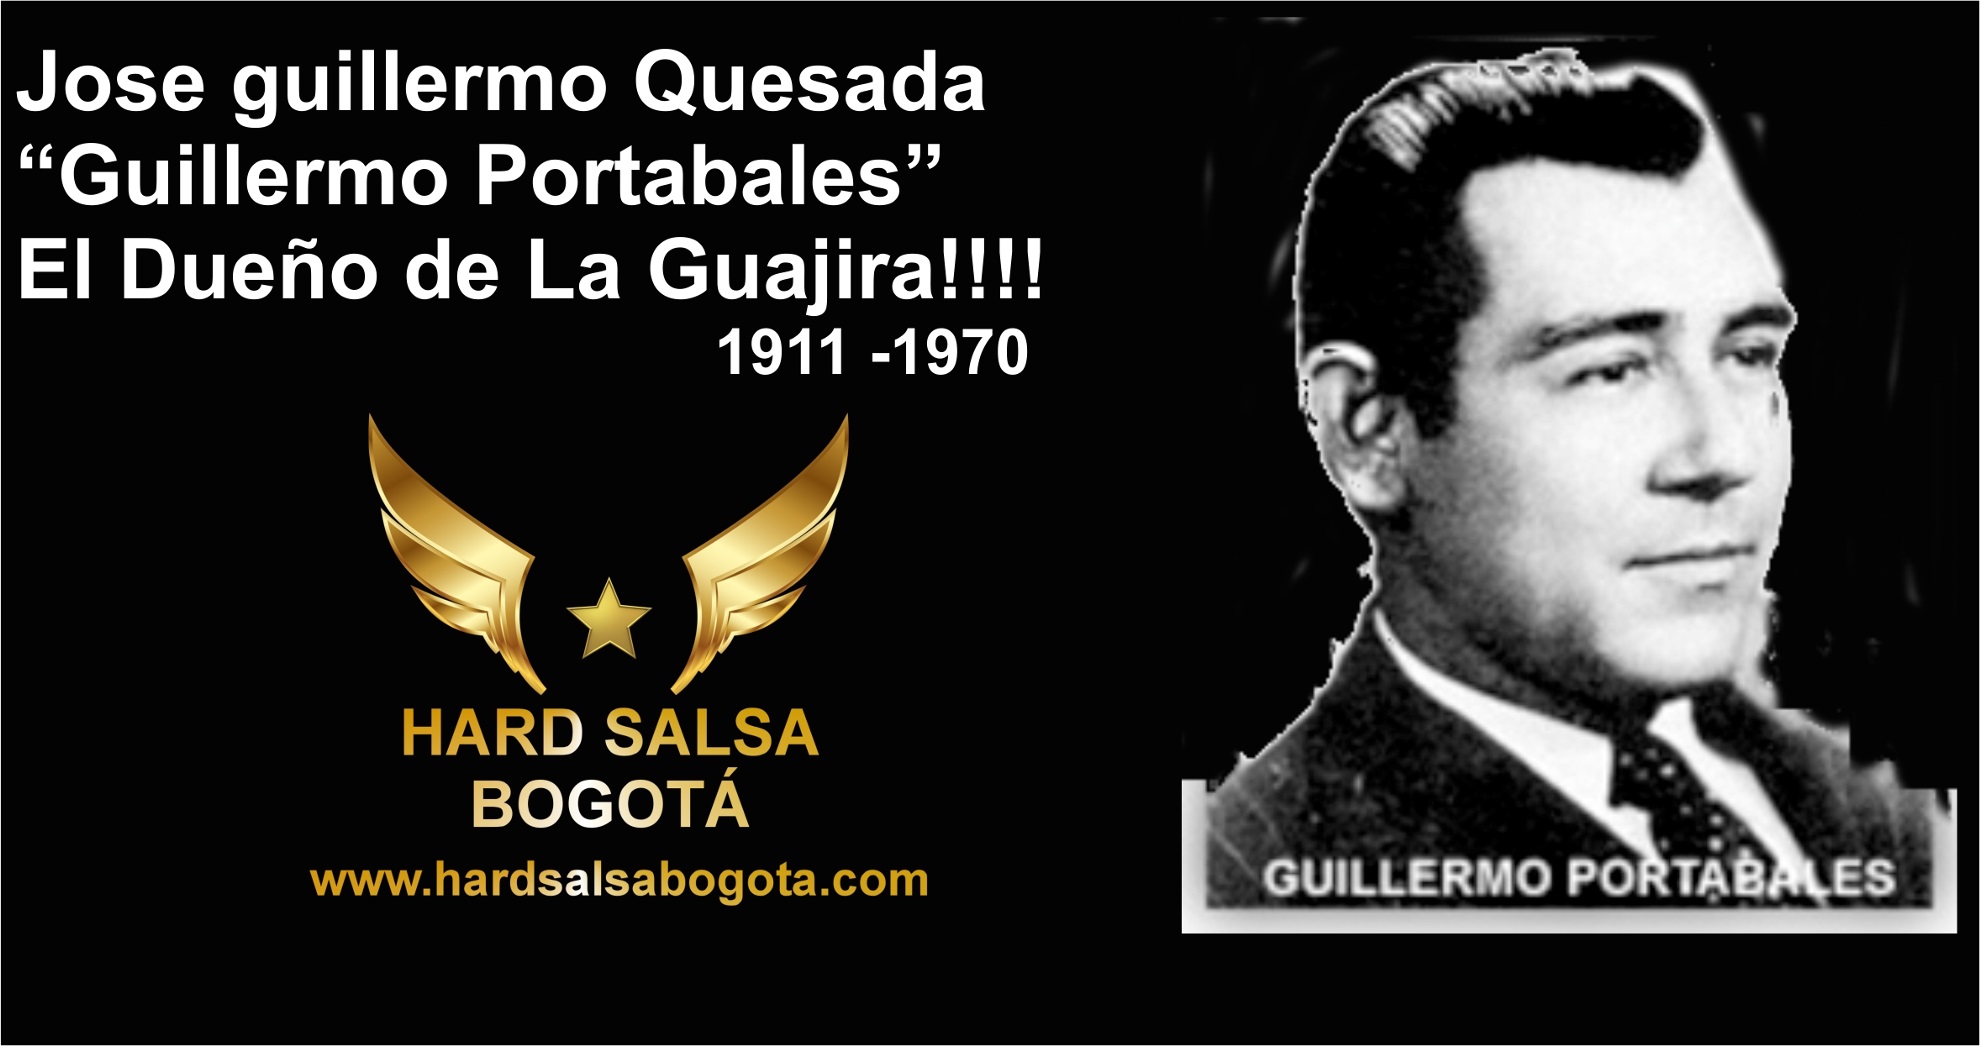 Jose Guillermo Quesada “Guillermo Portabales”